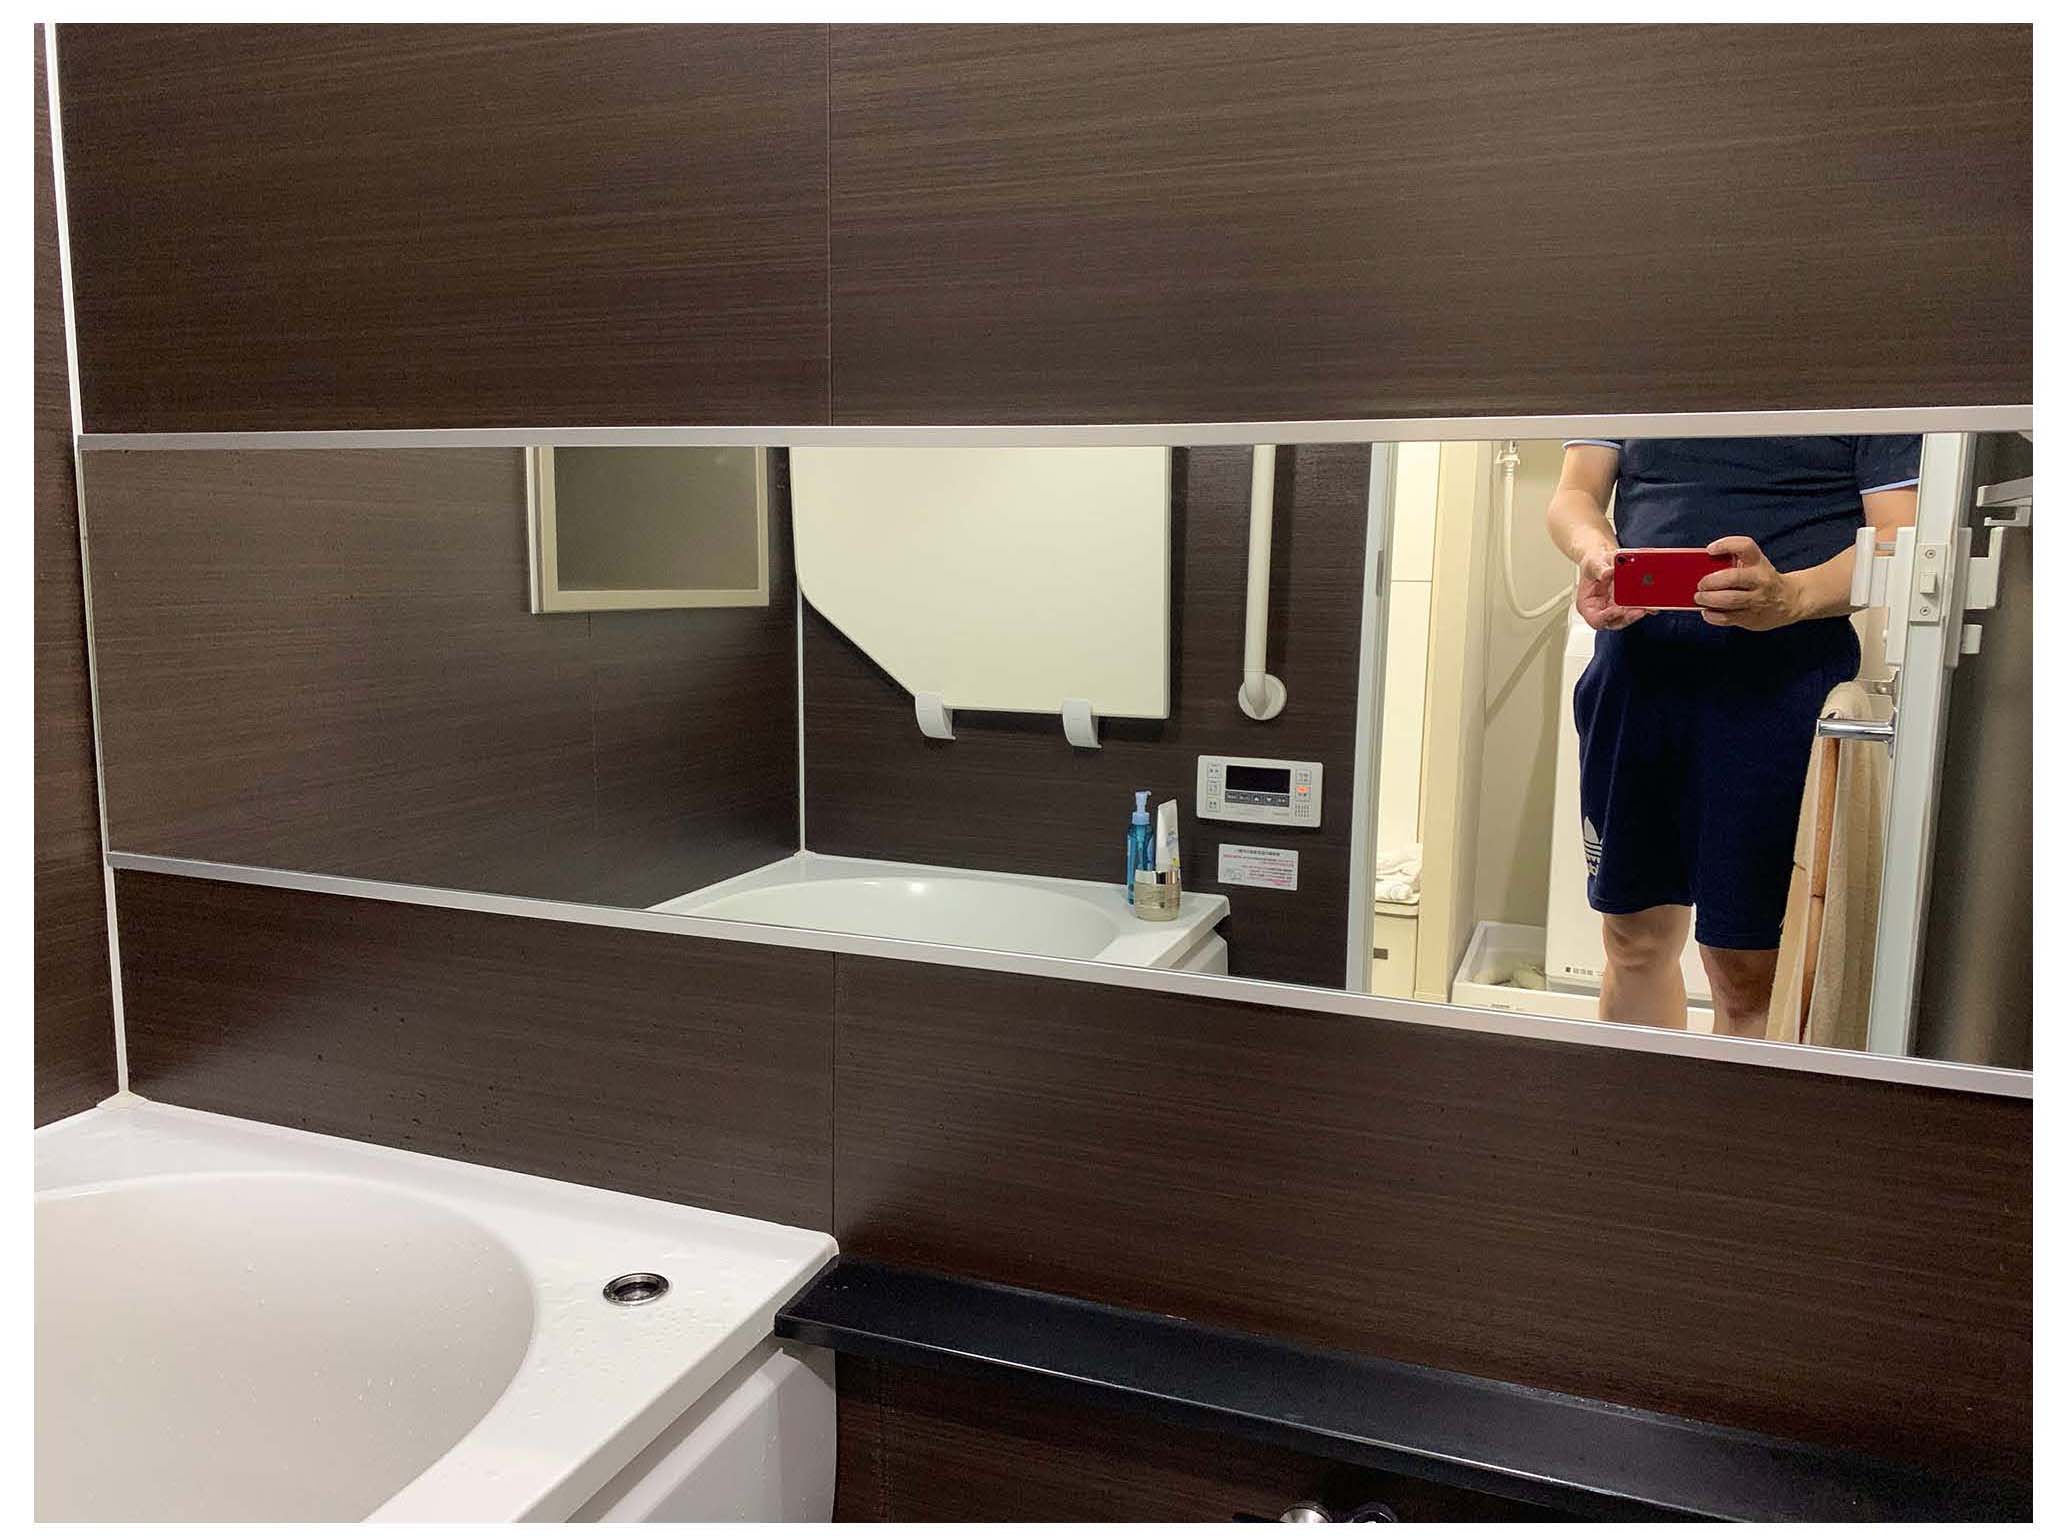 お風呂の鏡を新しいものに交換されたお客様 愛知県名古屋市e様 Kg Press ガラス情報発信メディア